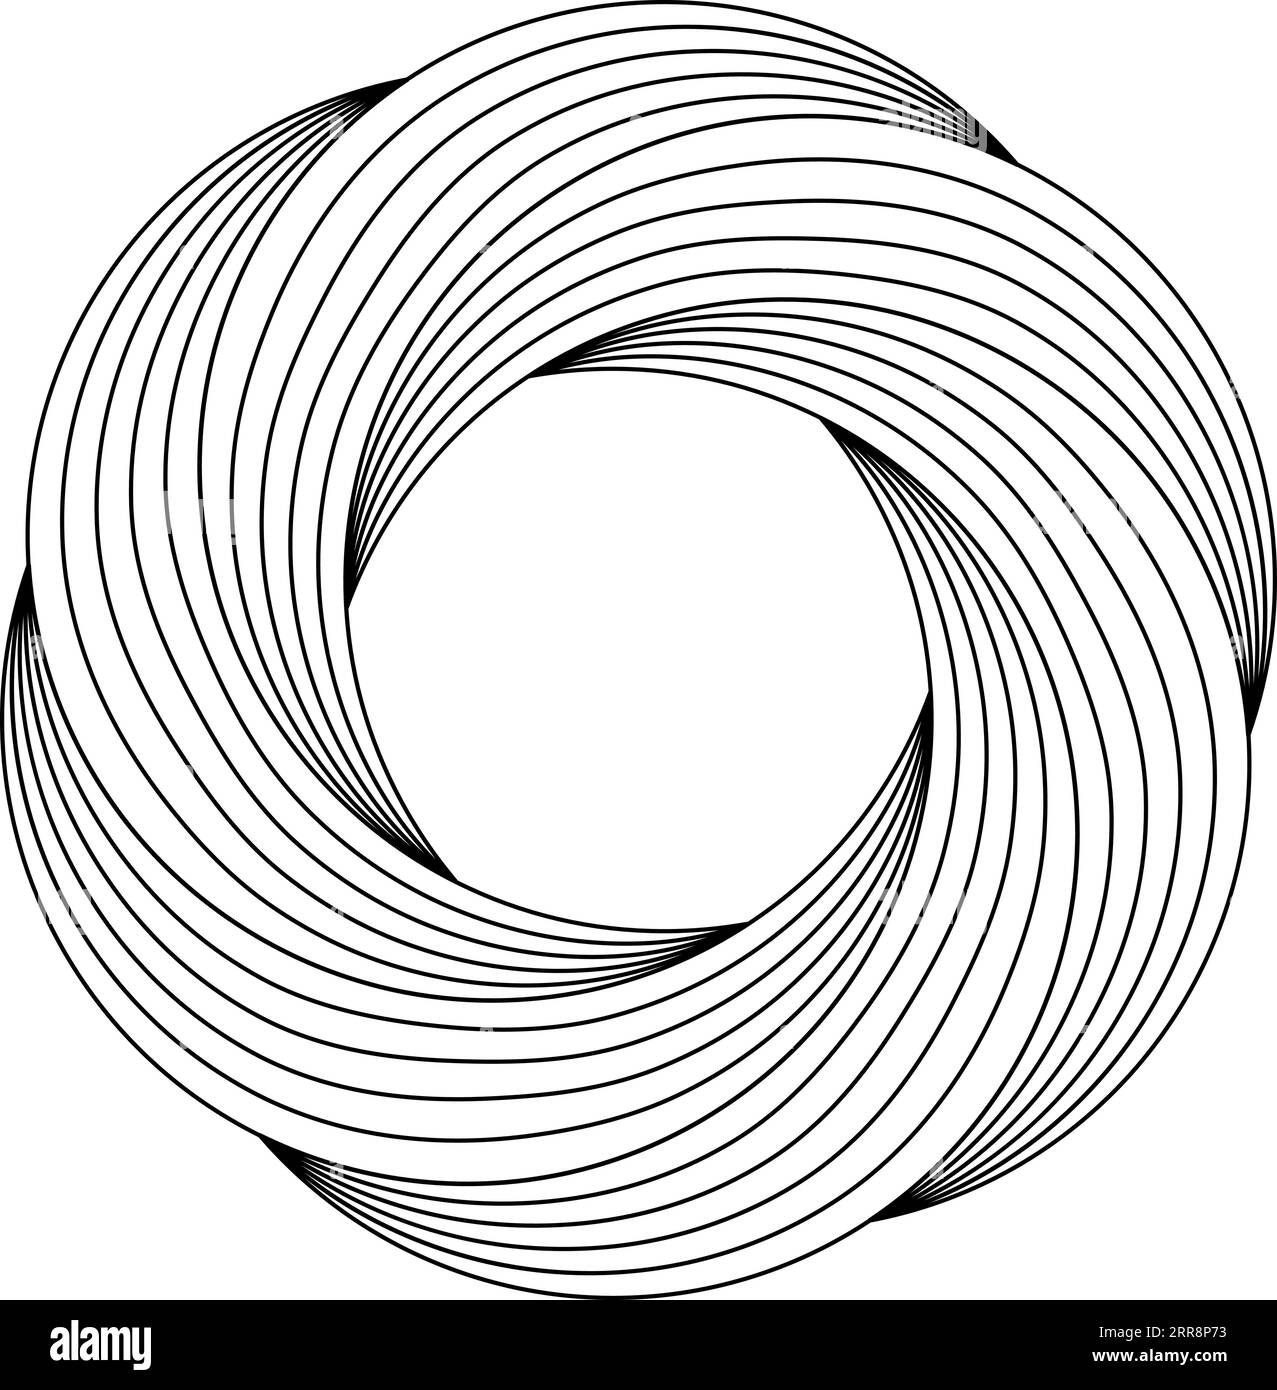 Kreisförmige Rotation Blumenmuster, wirbelnde, feinere Linien, Ringvorlage Stock Vektor